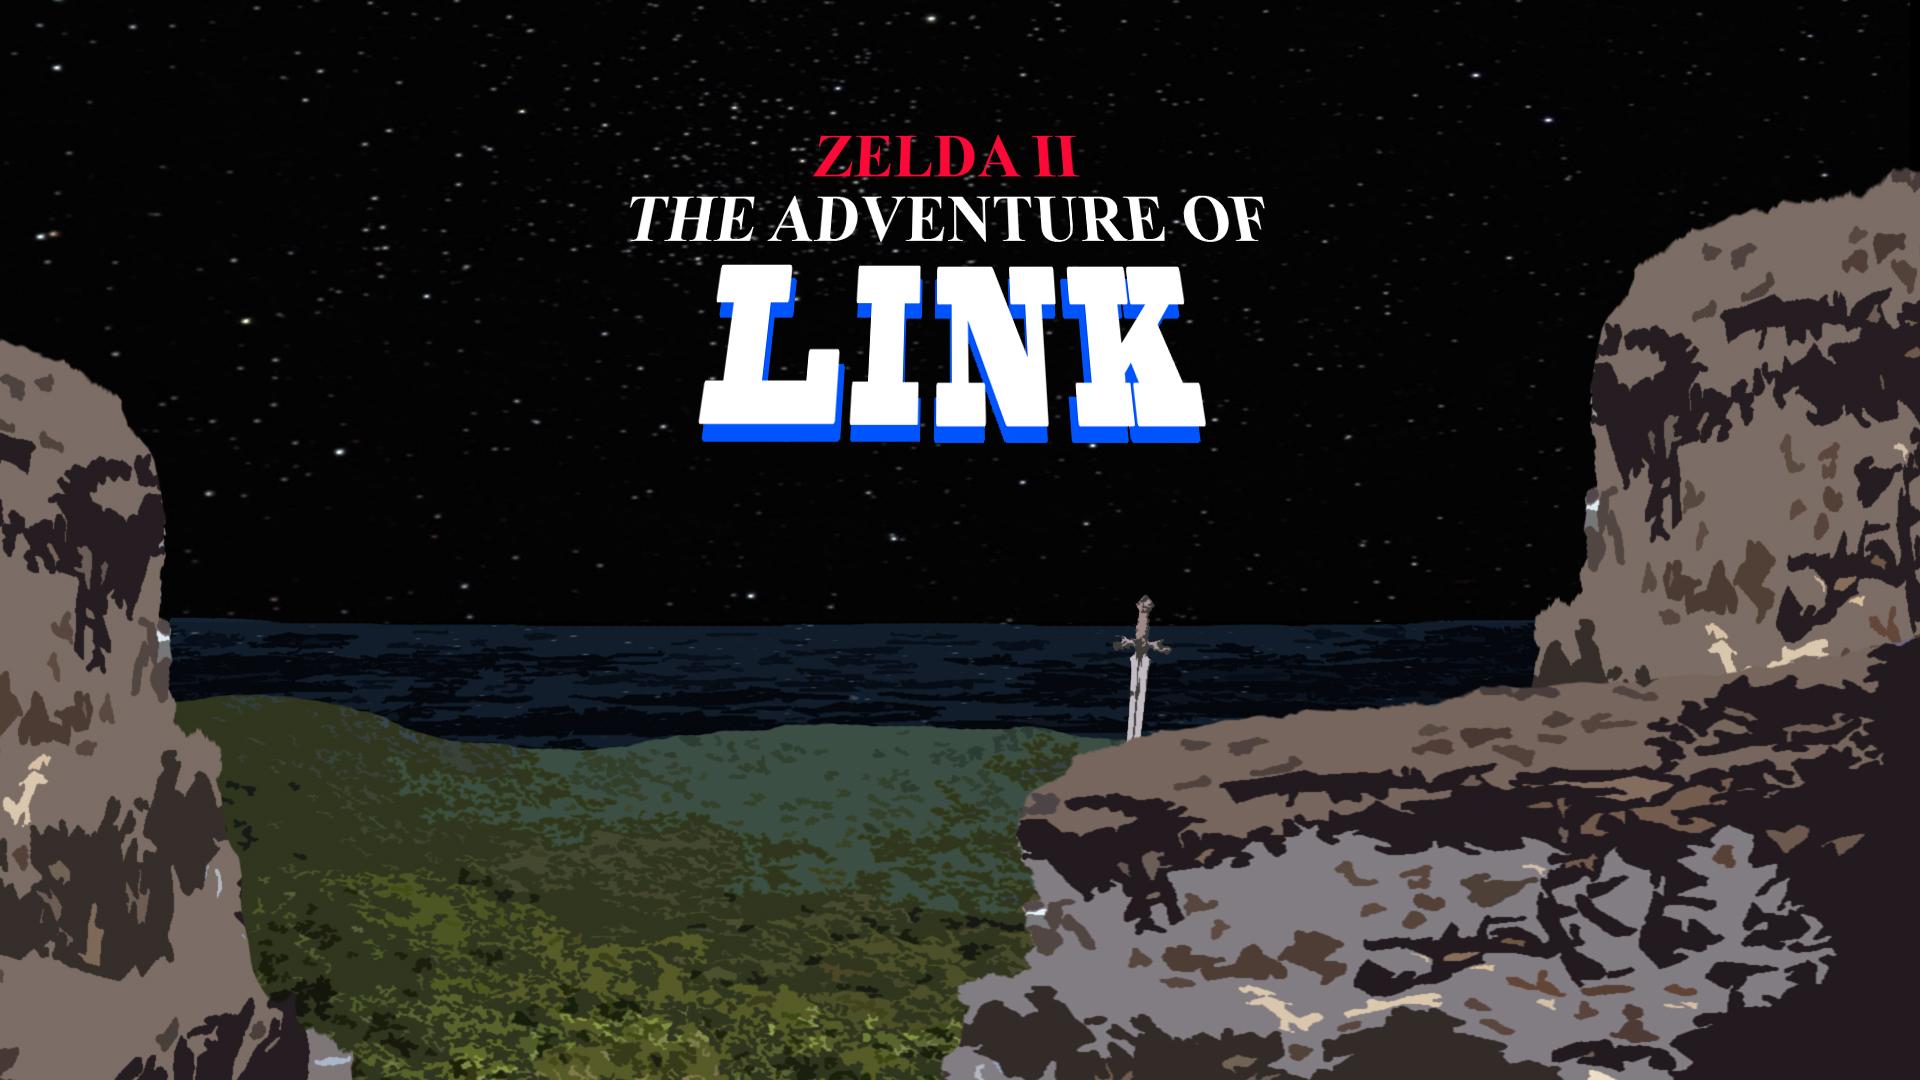 Zelda II: The Adventure of Link HD Wallpaper. Background